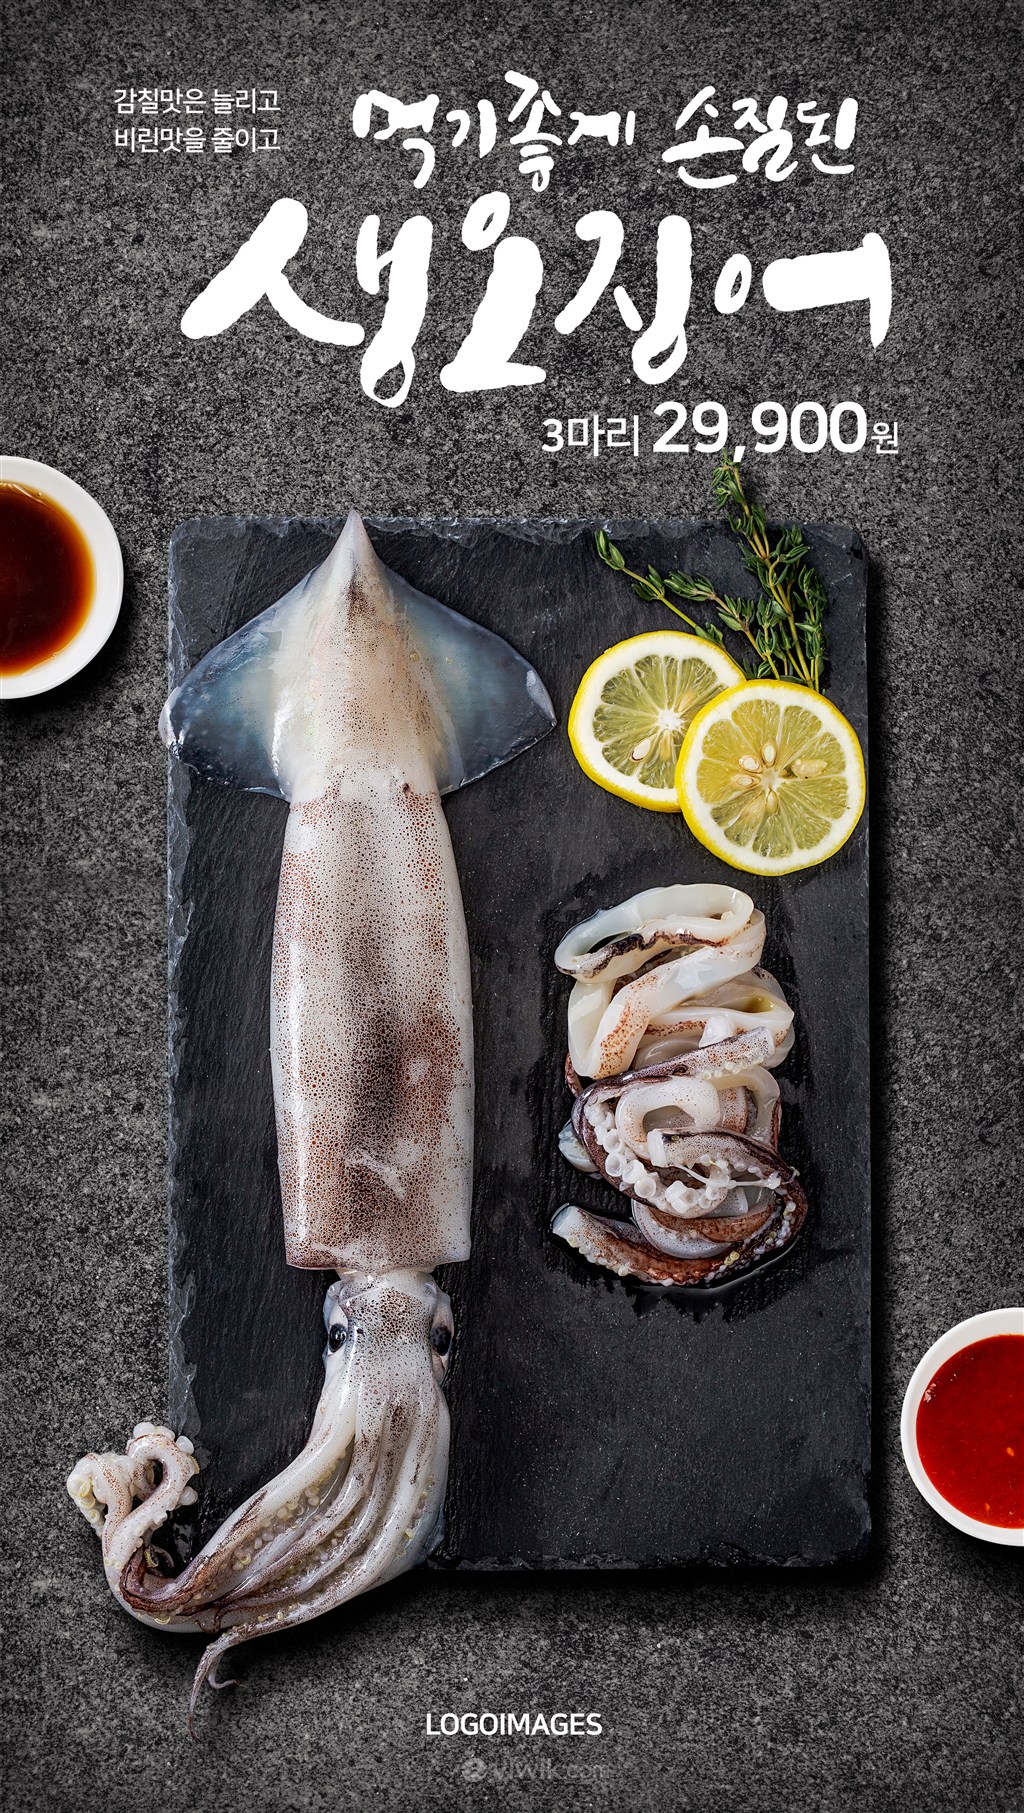 精美章鱼刺身海鲜广告美食海报模板